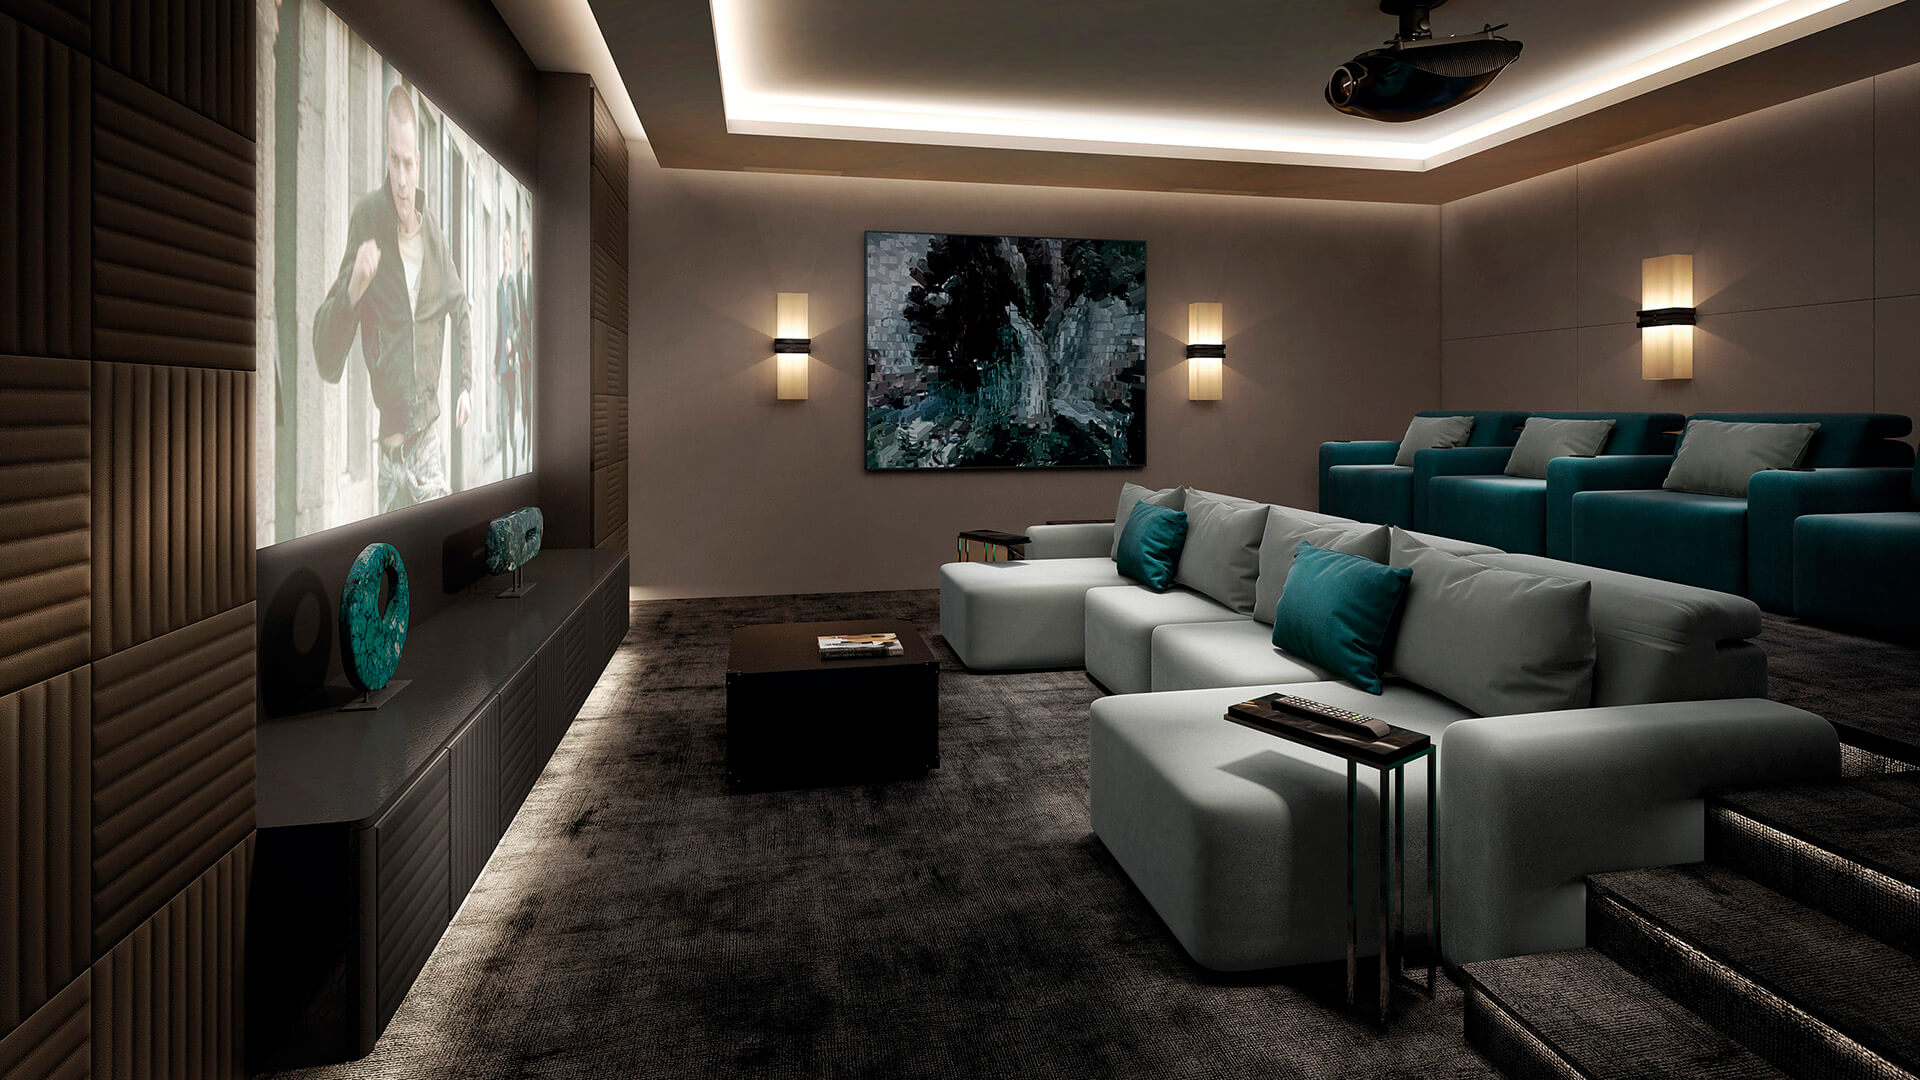 Sala de cine en casa con cómodos sofás reclinables y chaise longues con opción de personalización y fabricación a medida.